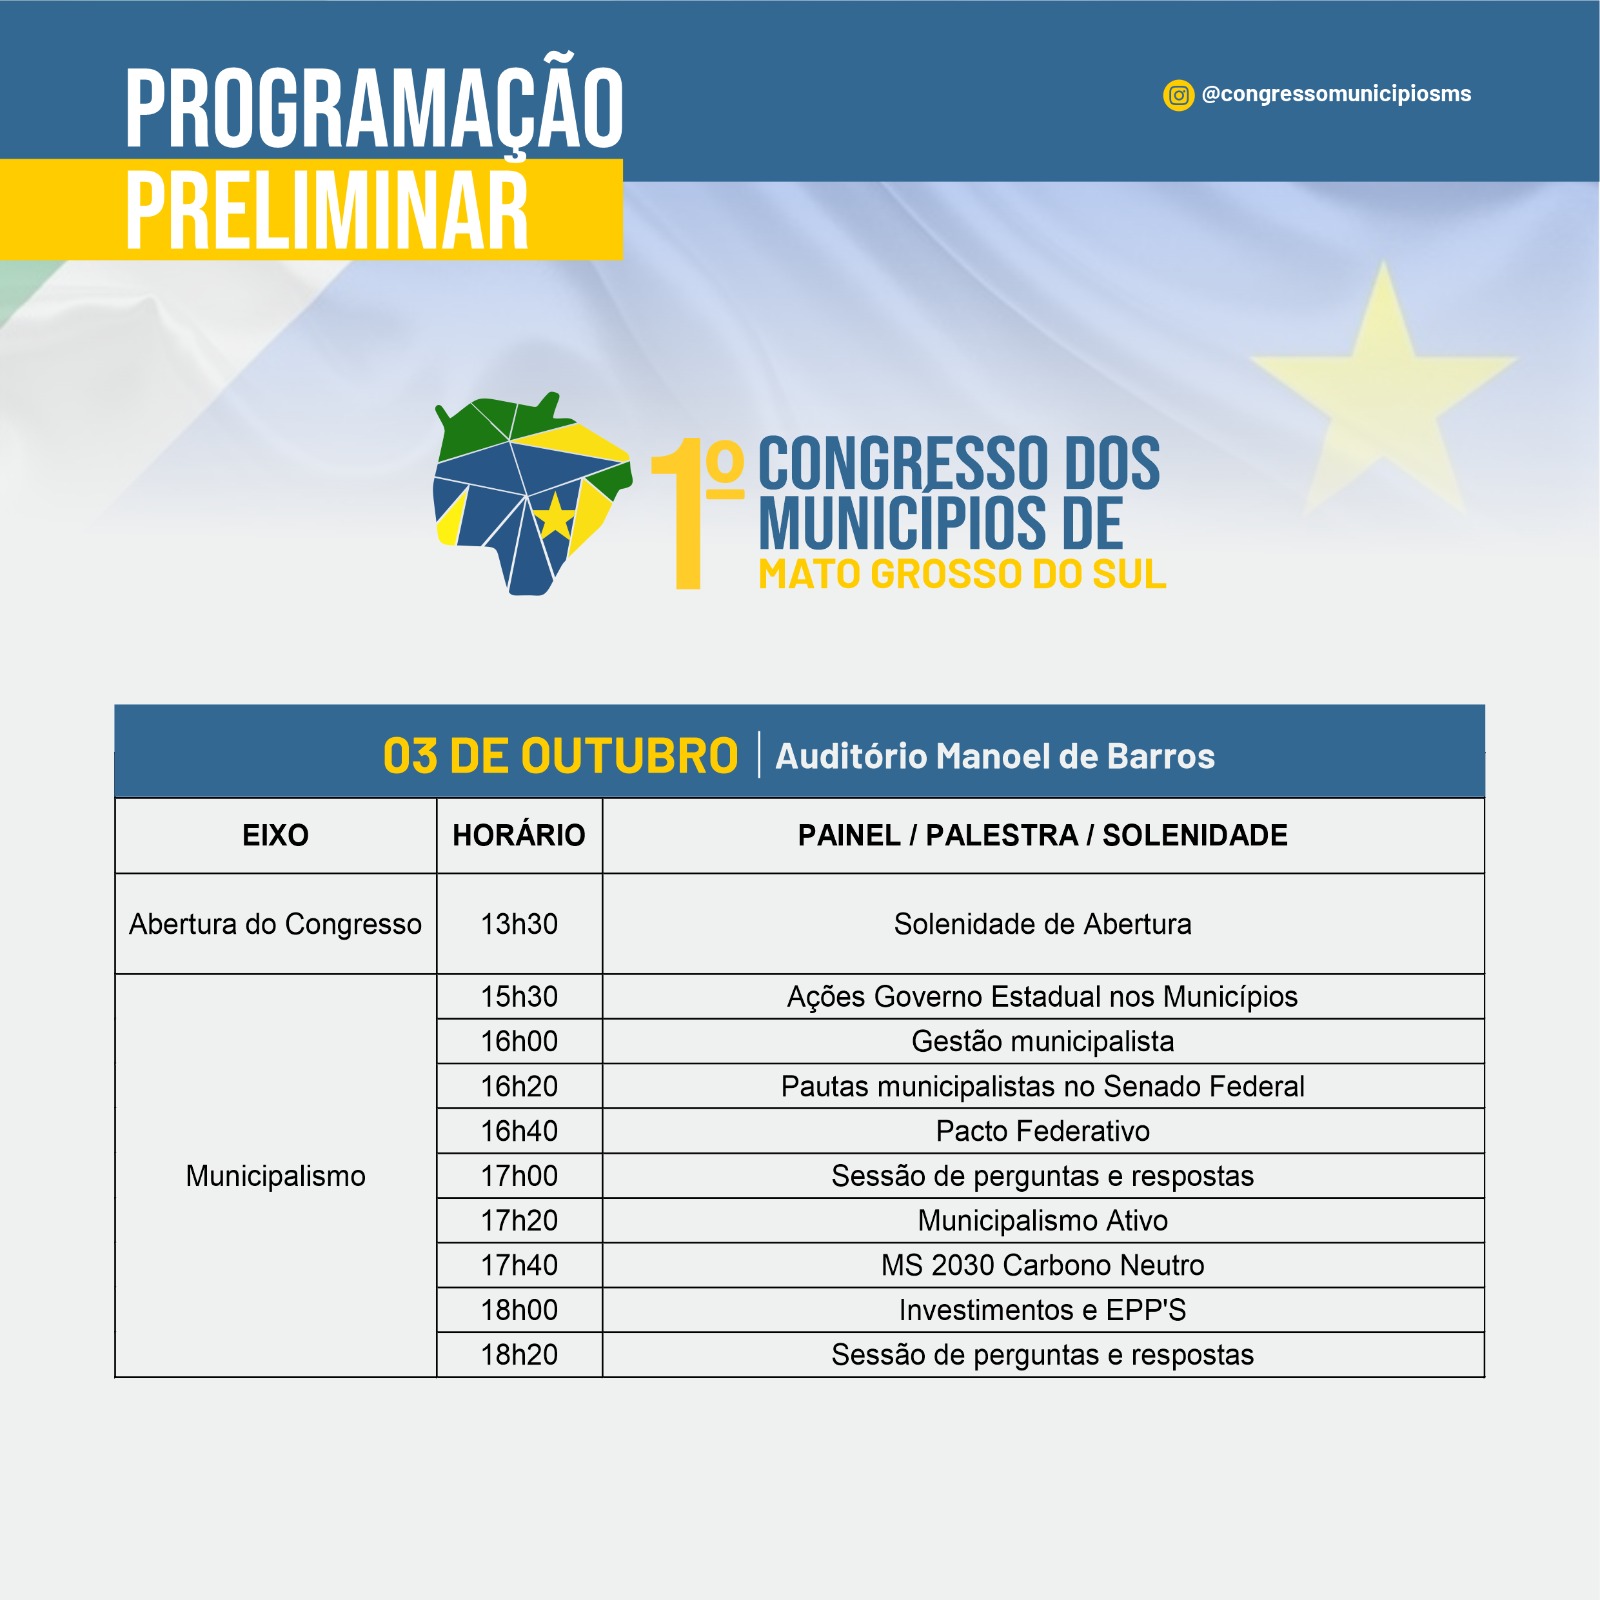 Programação preliminar do 1º Congresso dos Municípios de Mato Grosso do Sul